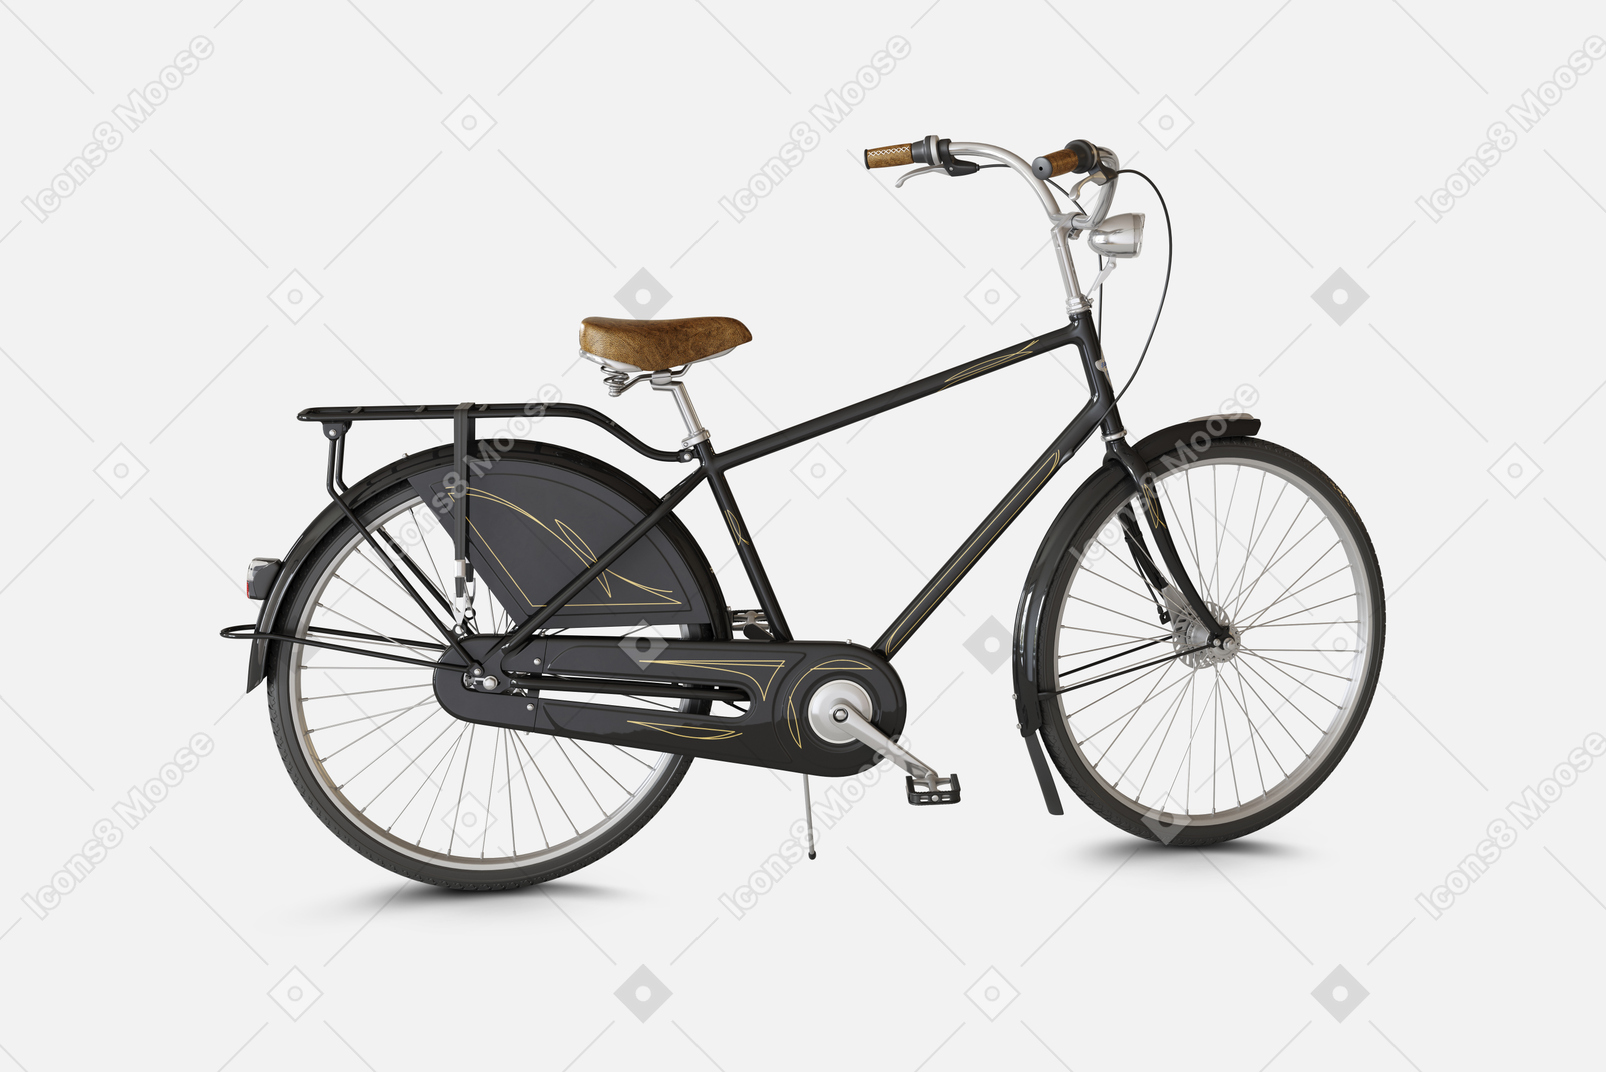 Bicicleta urbana negra con frenos delanteros y traseros y un cuadro especial